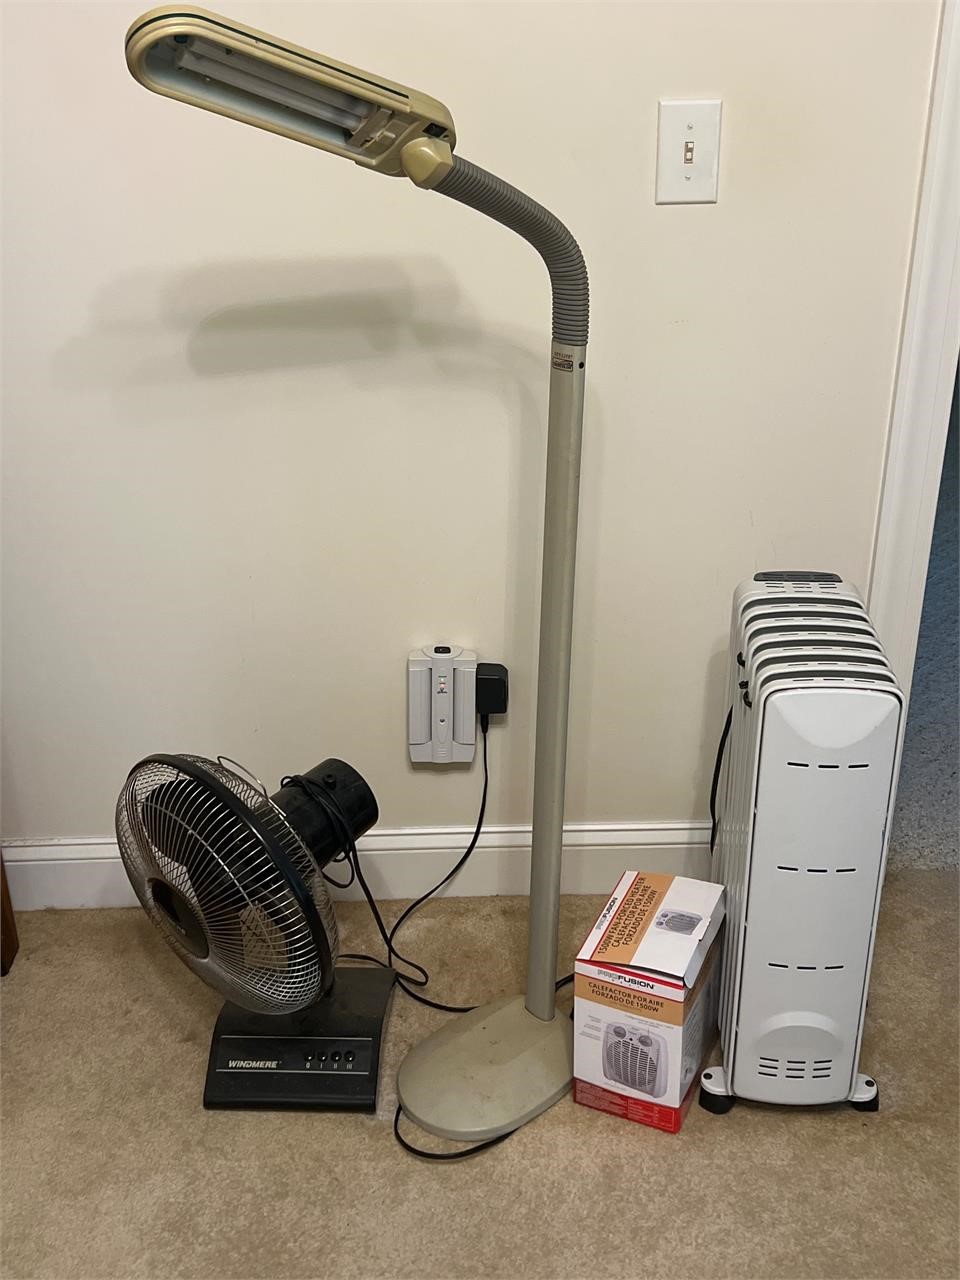 Heater fan lamp (needs bulb)